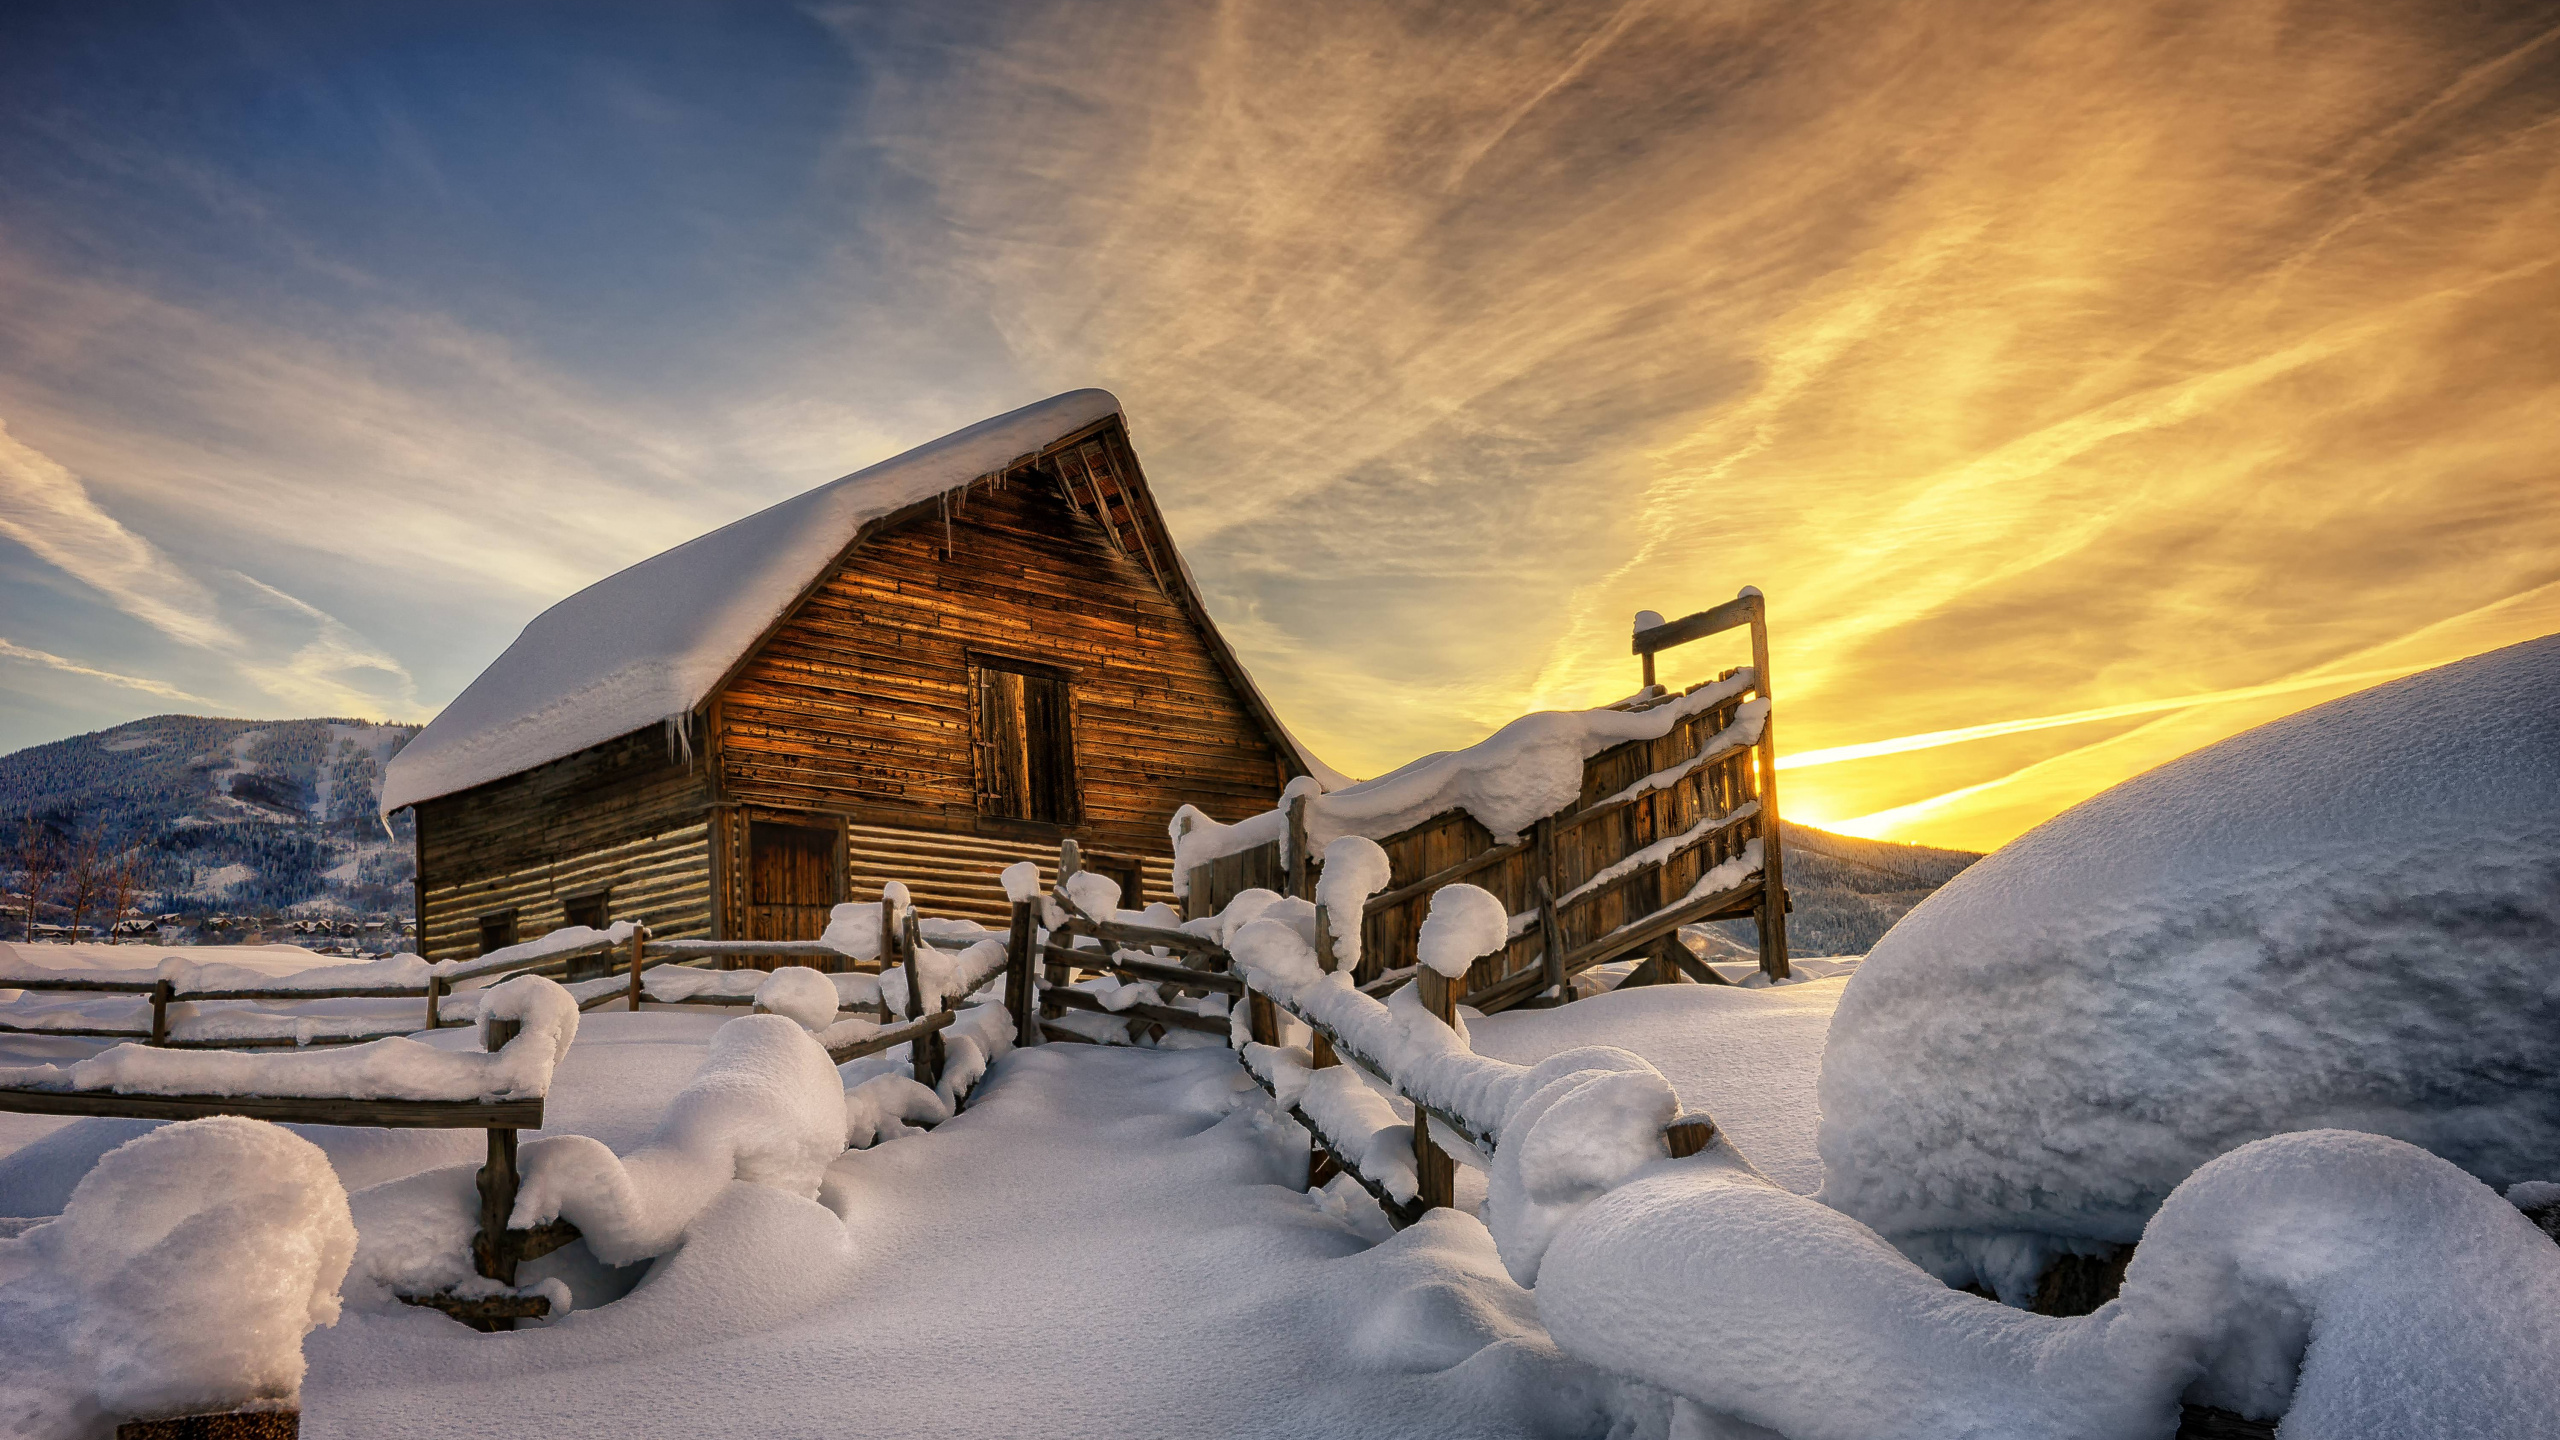 冬天, 冻结, 建筑, 旅游景点, 北极 壁纸 2560x1440 允许